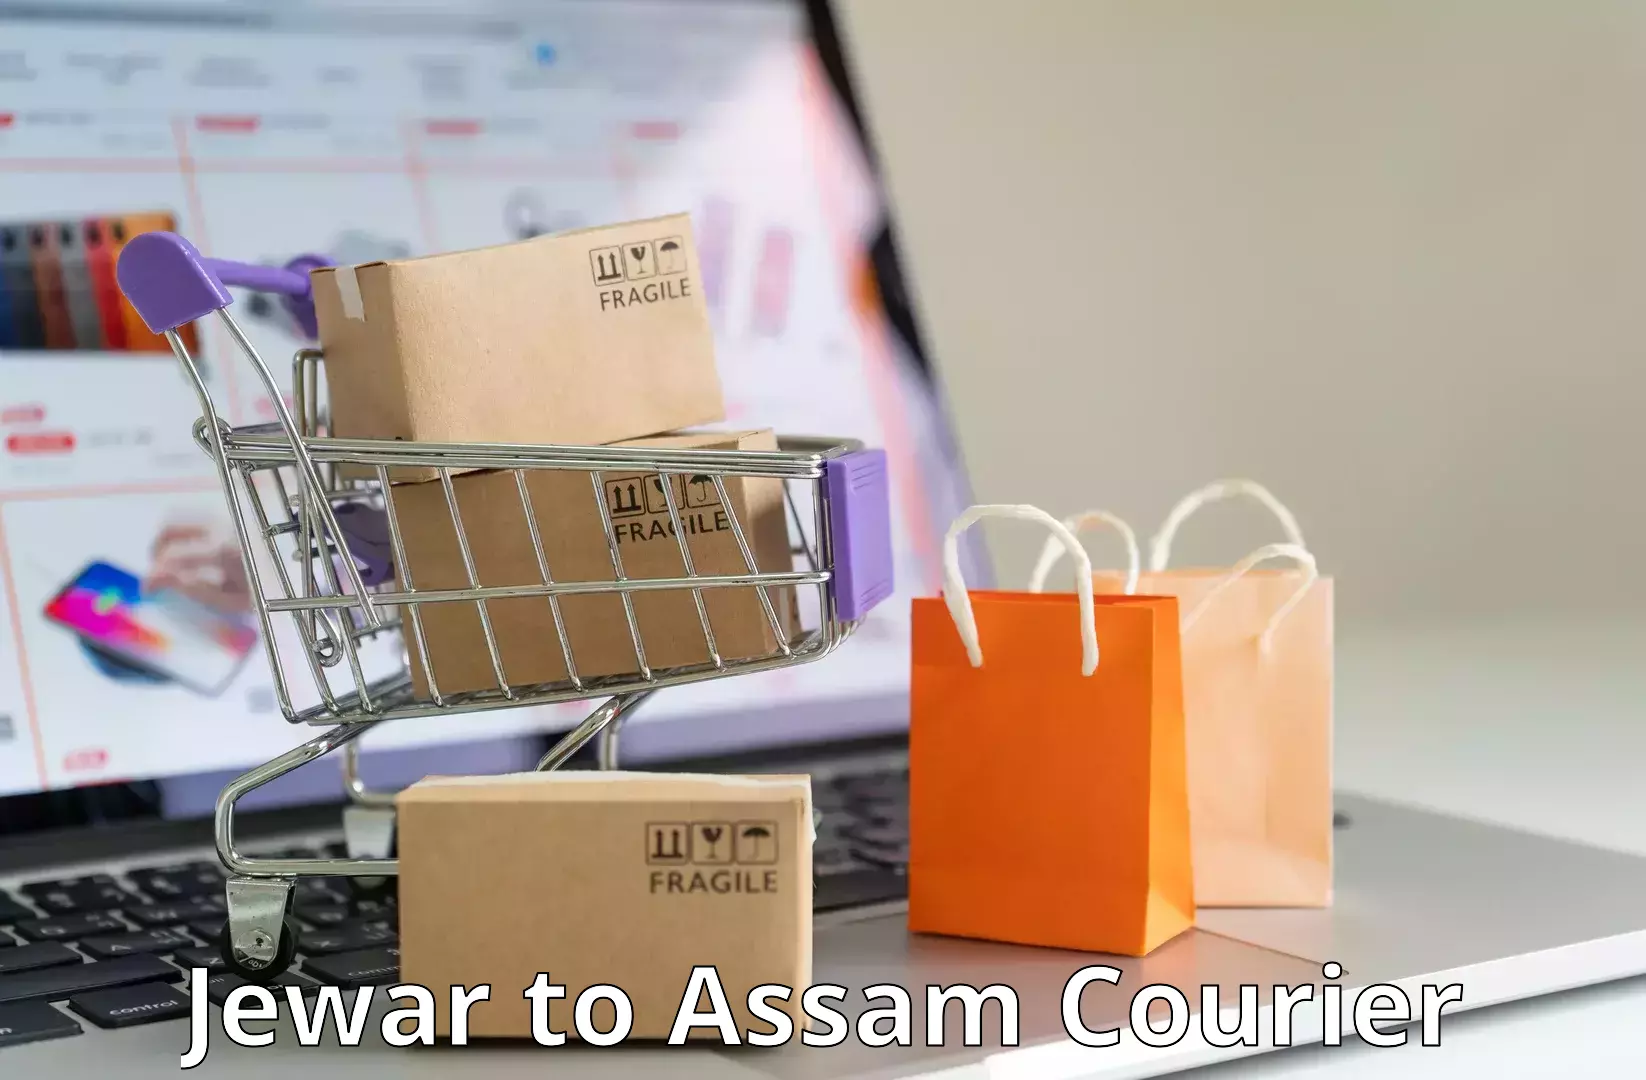 Regular parcel service Jewar to Assam